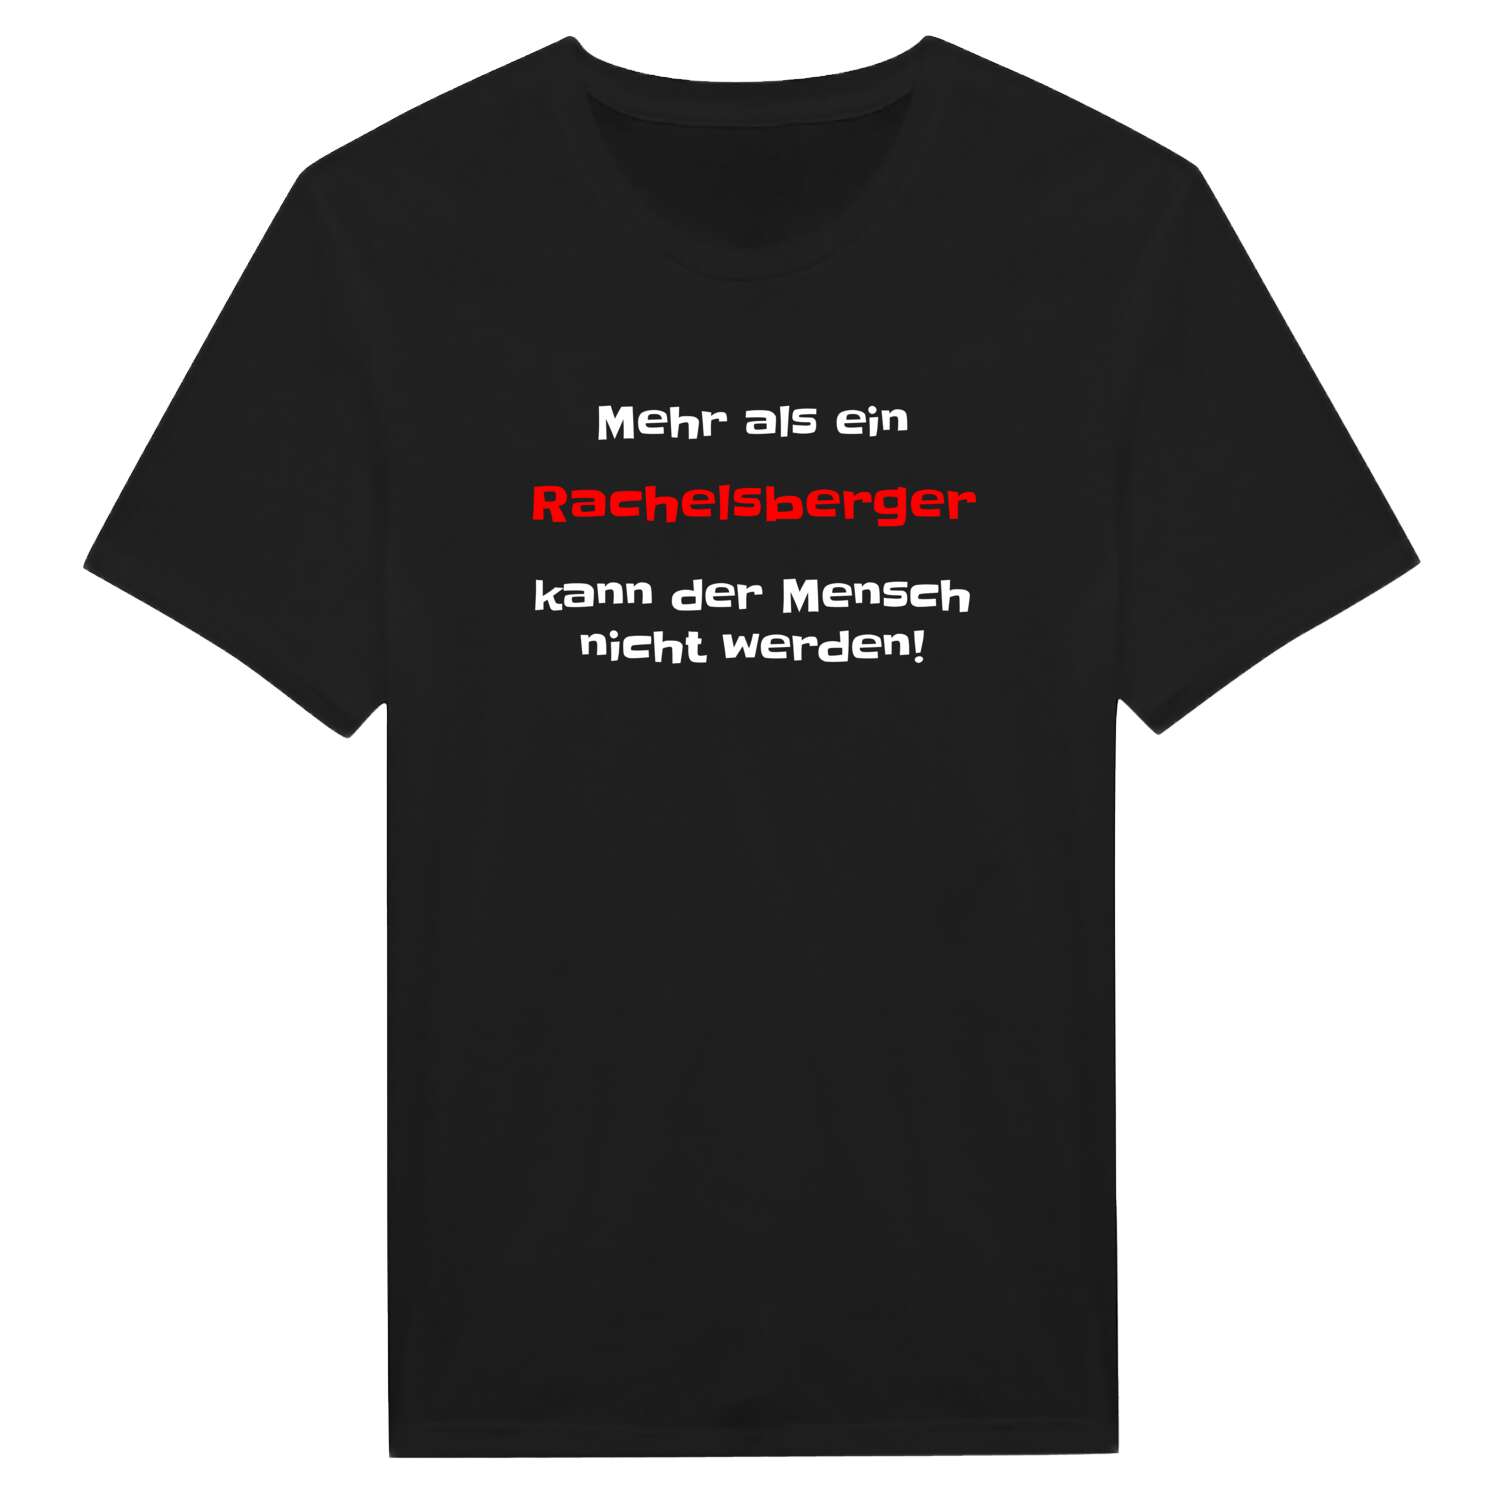 Rachelsberg T-Shirt »Mehr als ein«